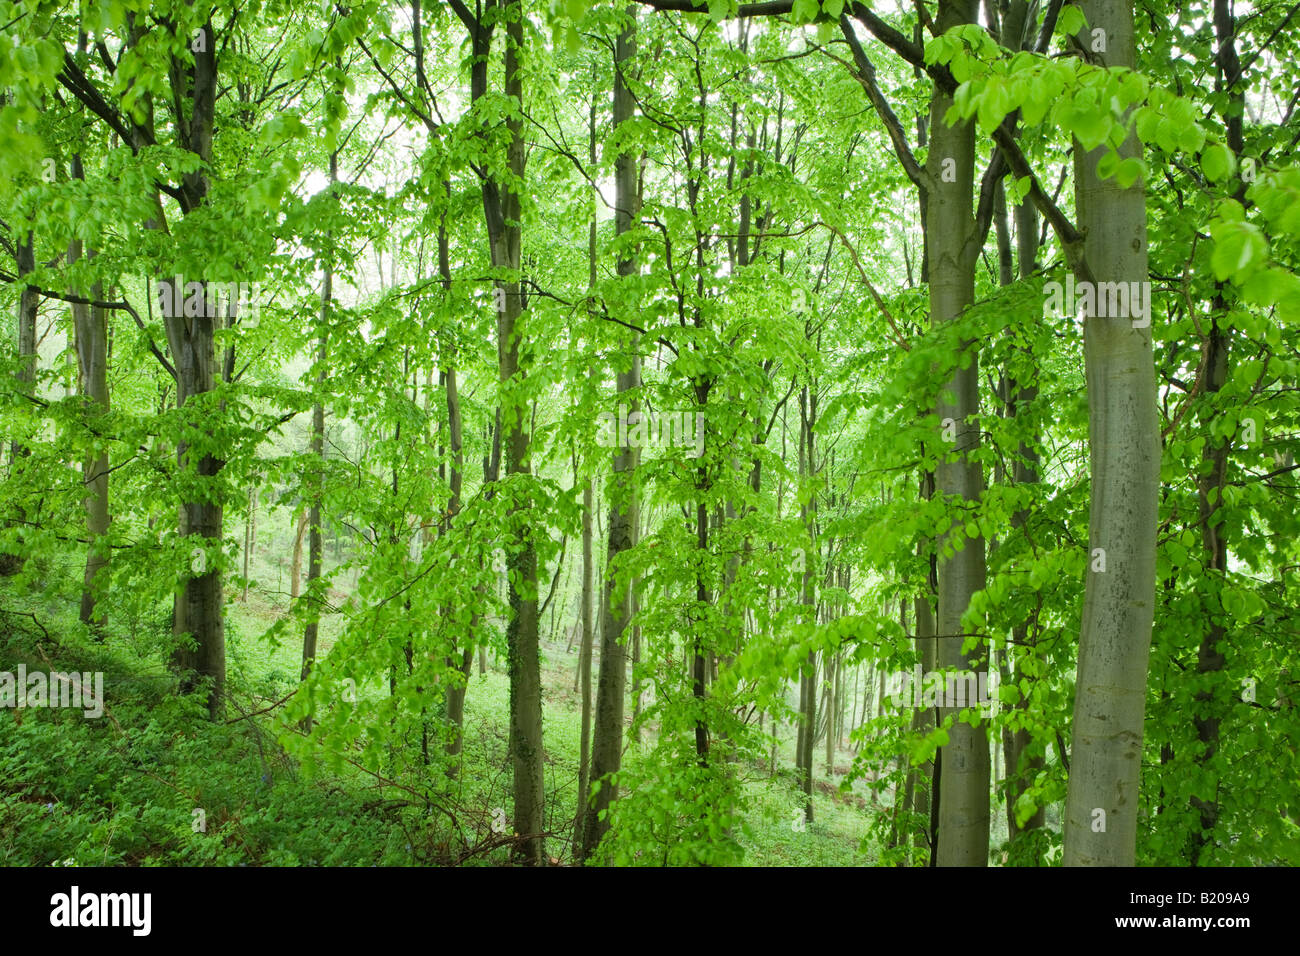 Bois de hêtre, Fagus sylvatica. Llanthony Bois, Pays de Galles, Royaume-Uni Banque D'Images